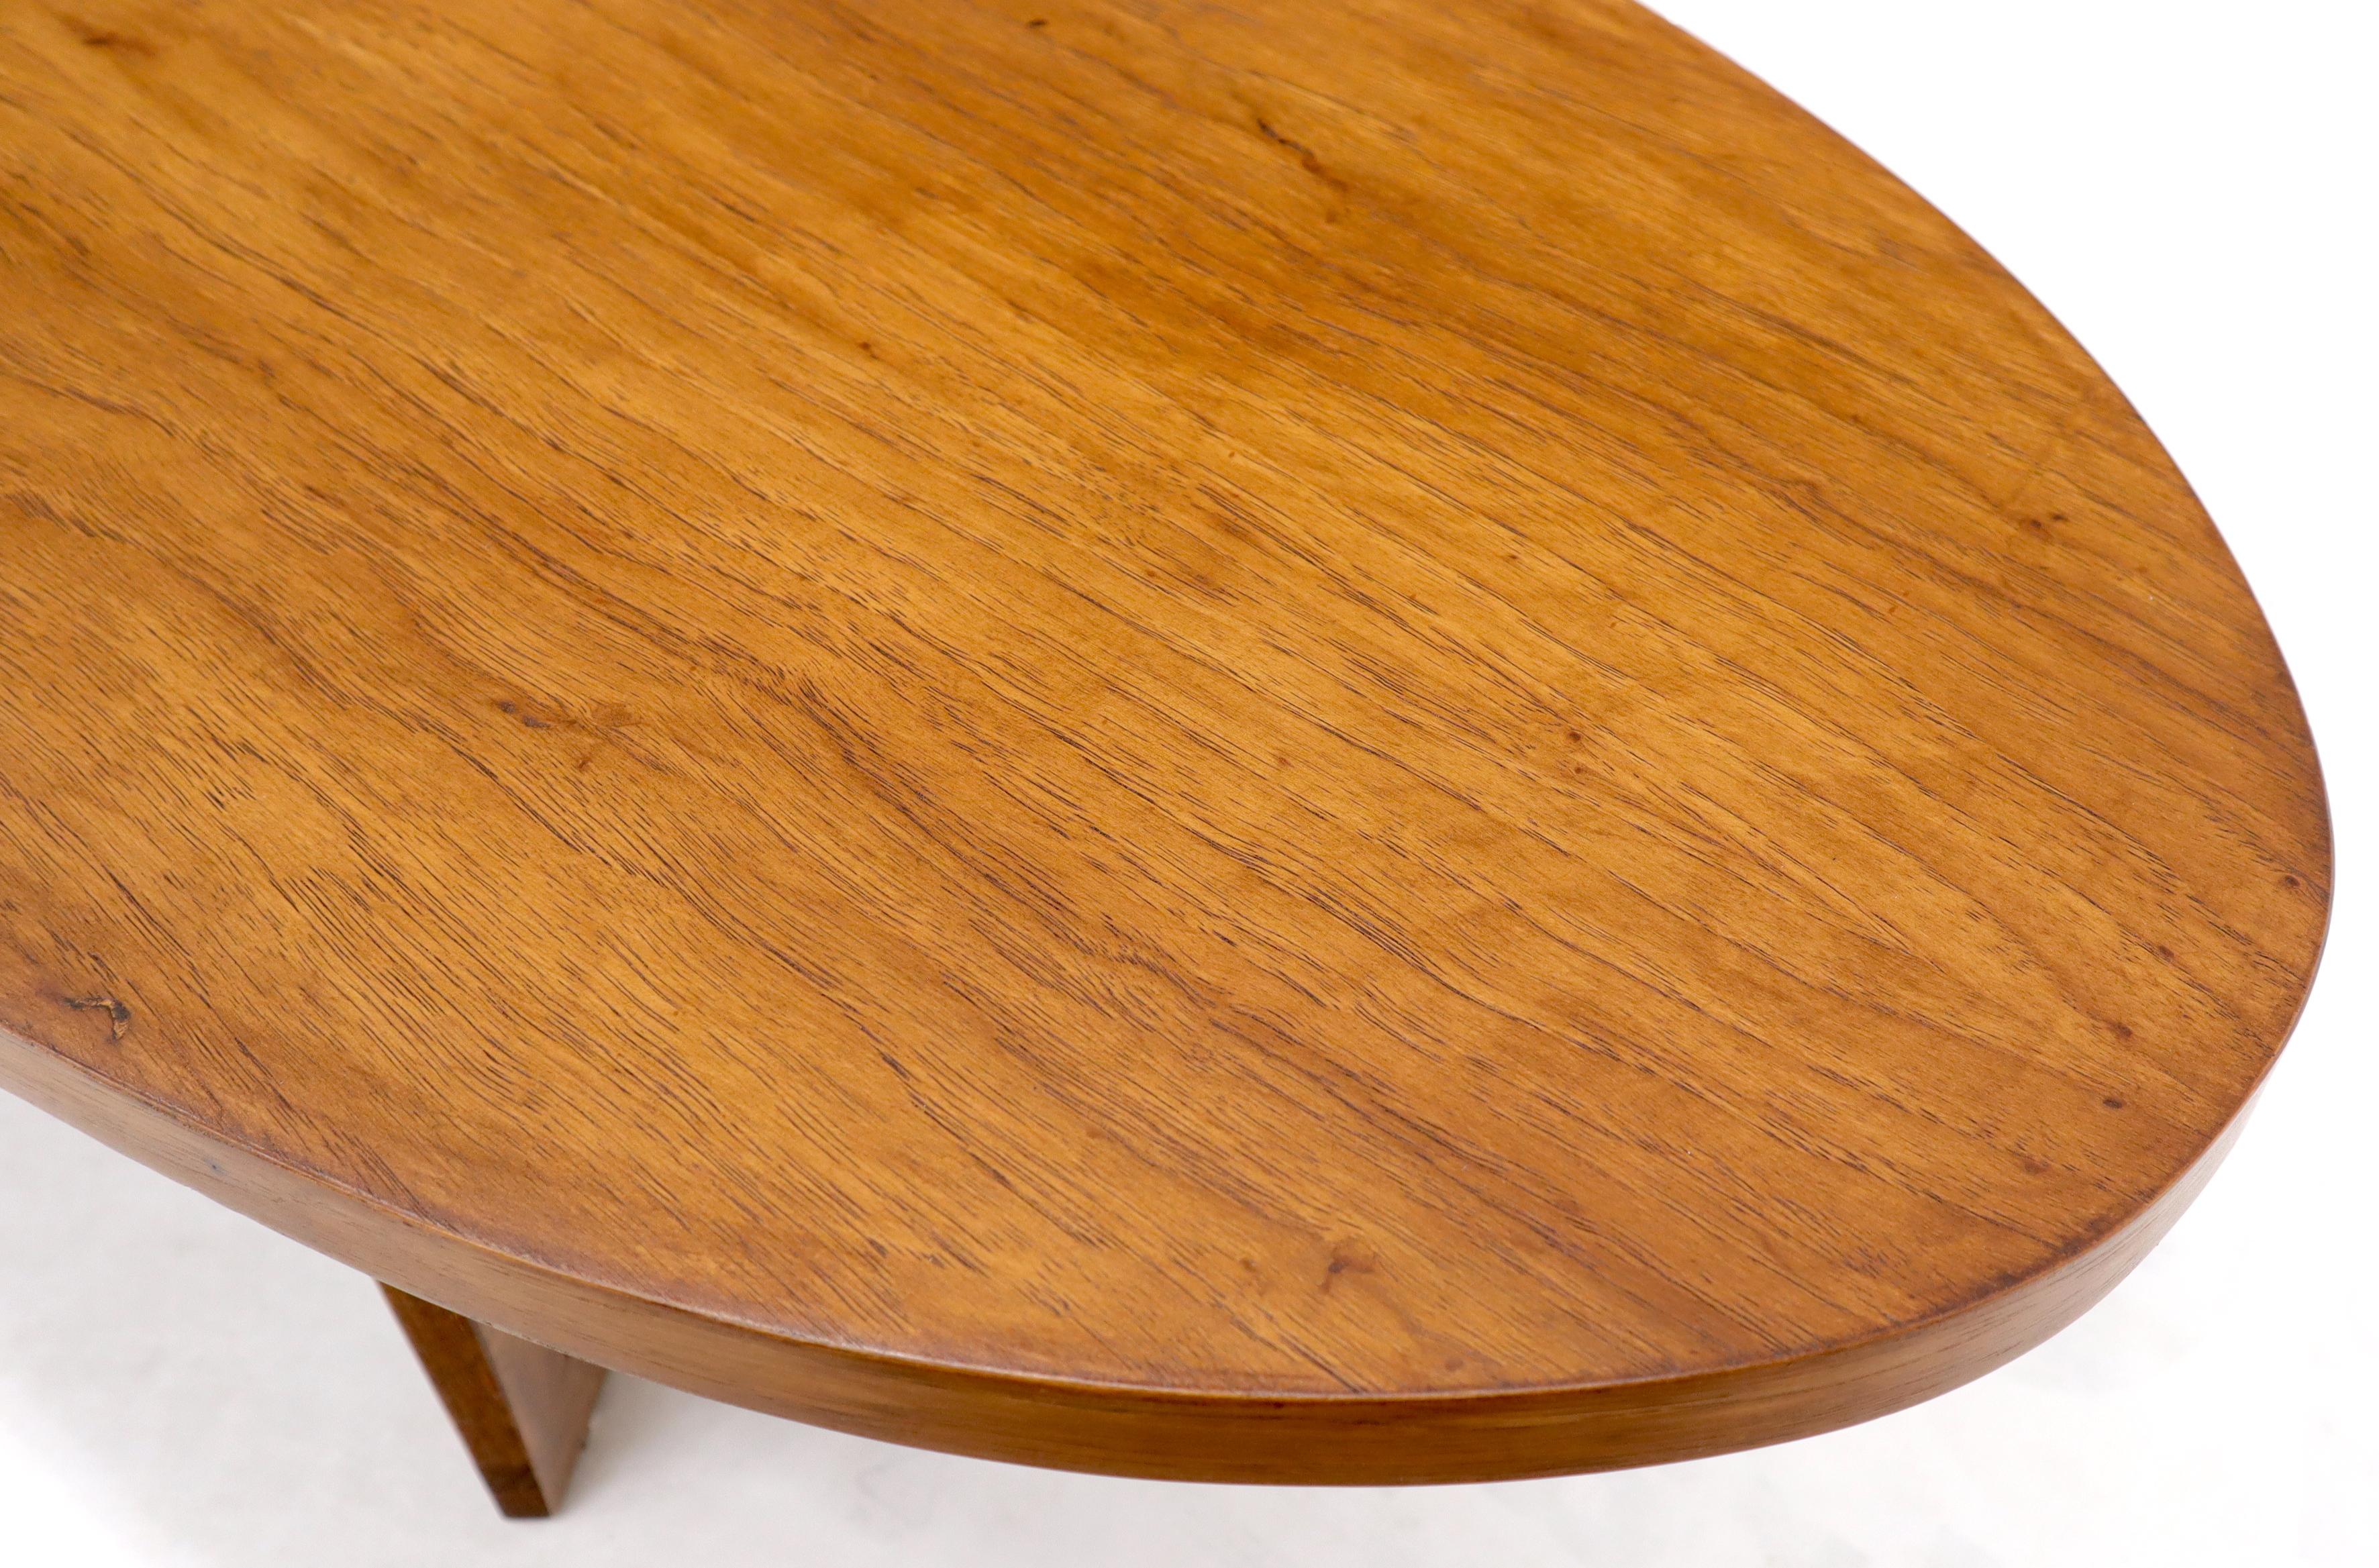 Walnut Mid-Century Modern Long Oval Surfboard Coffee Table